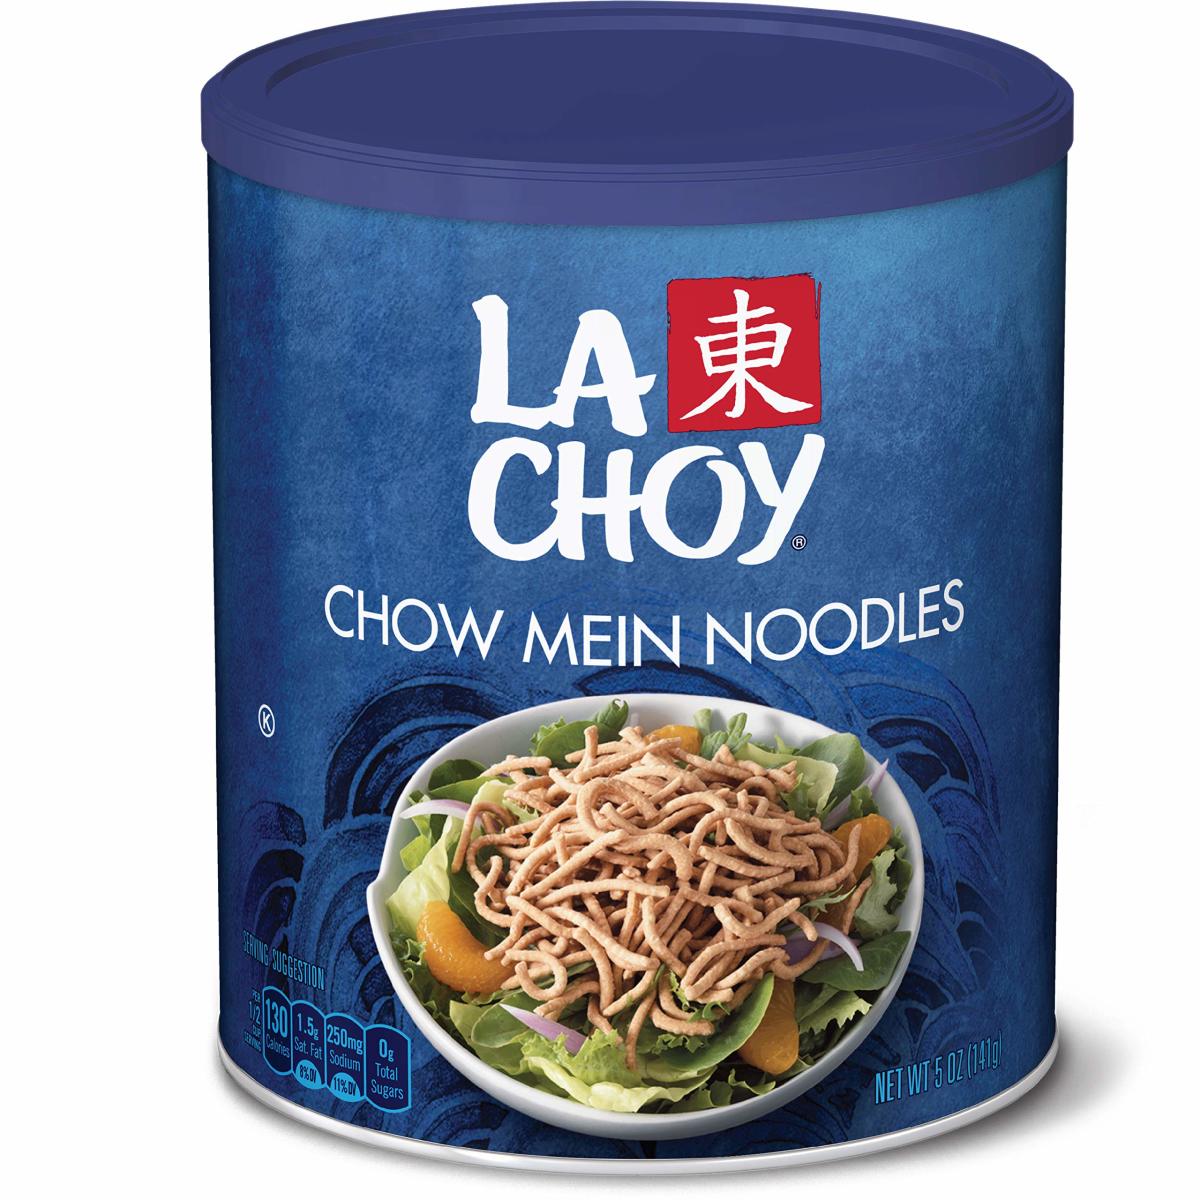 La Choy chow mein noodles